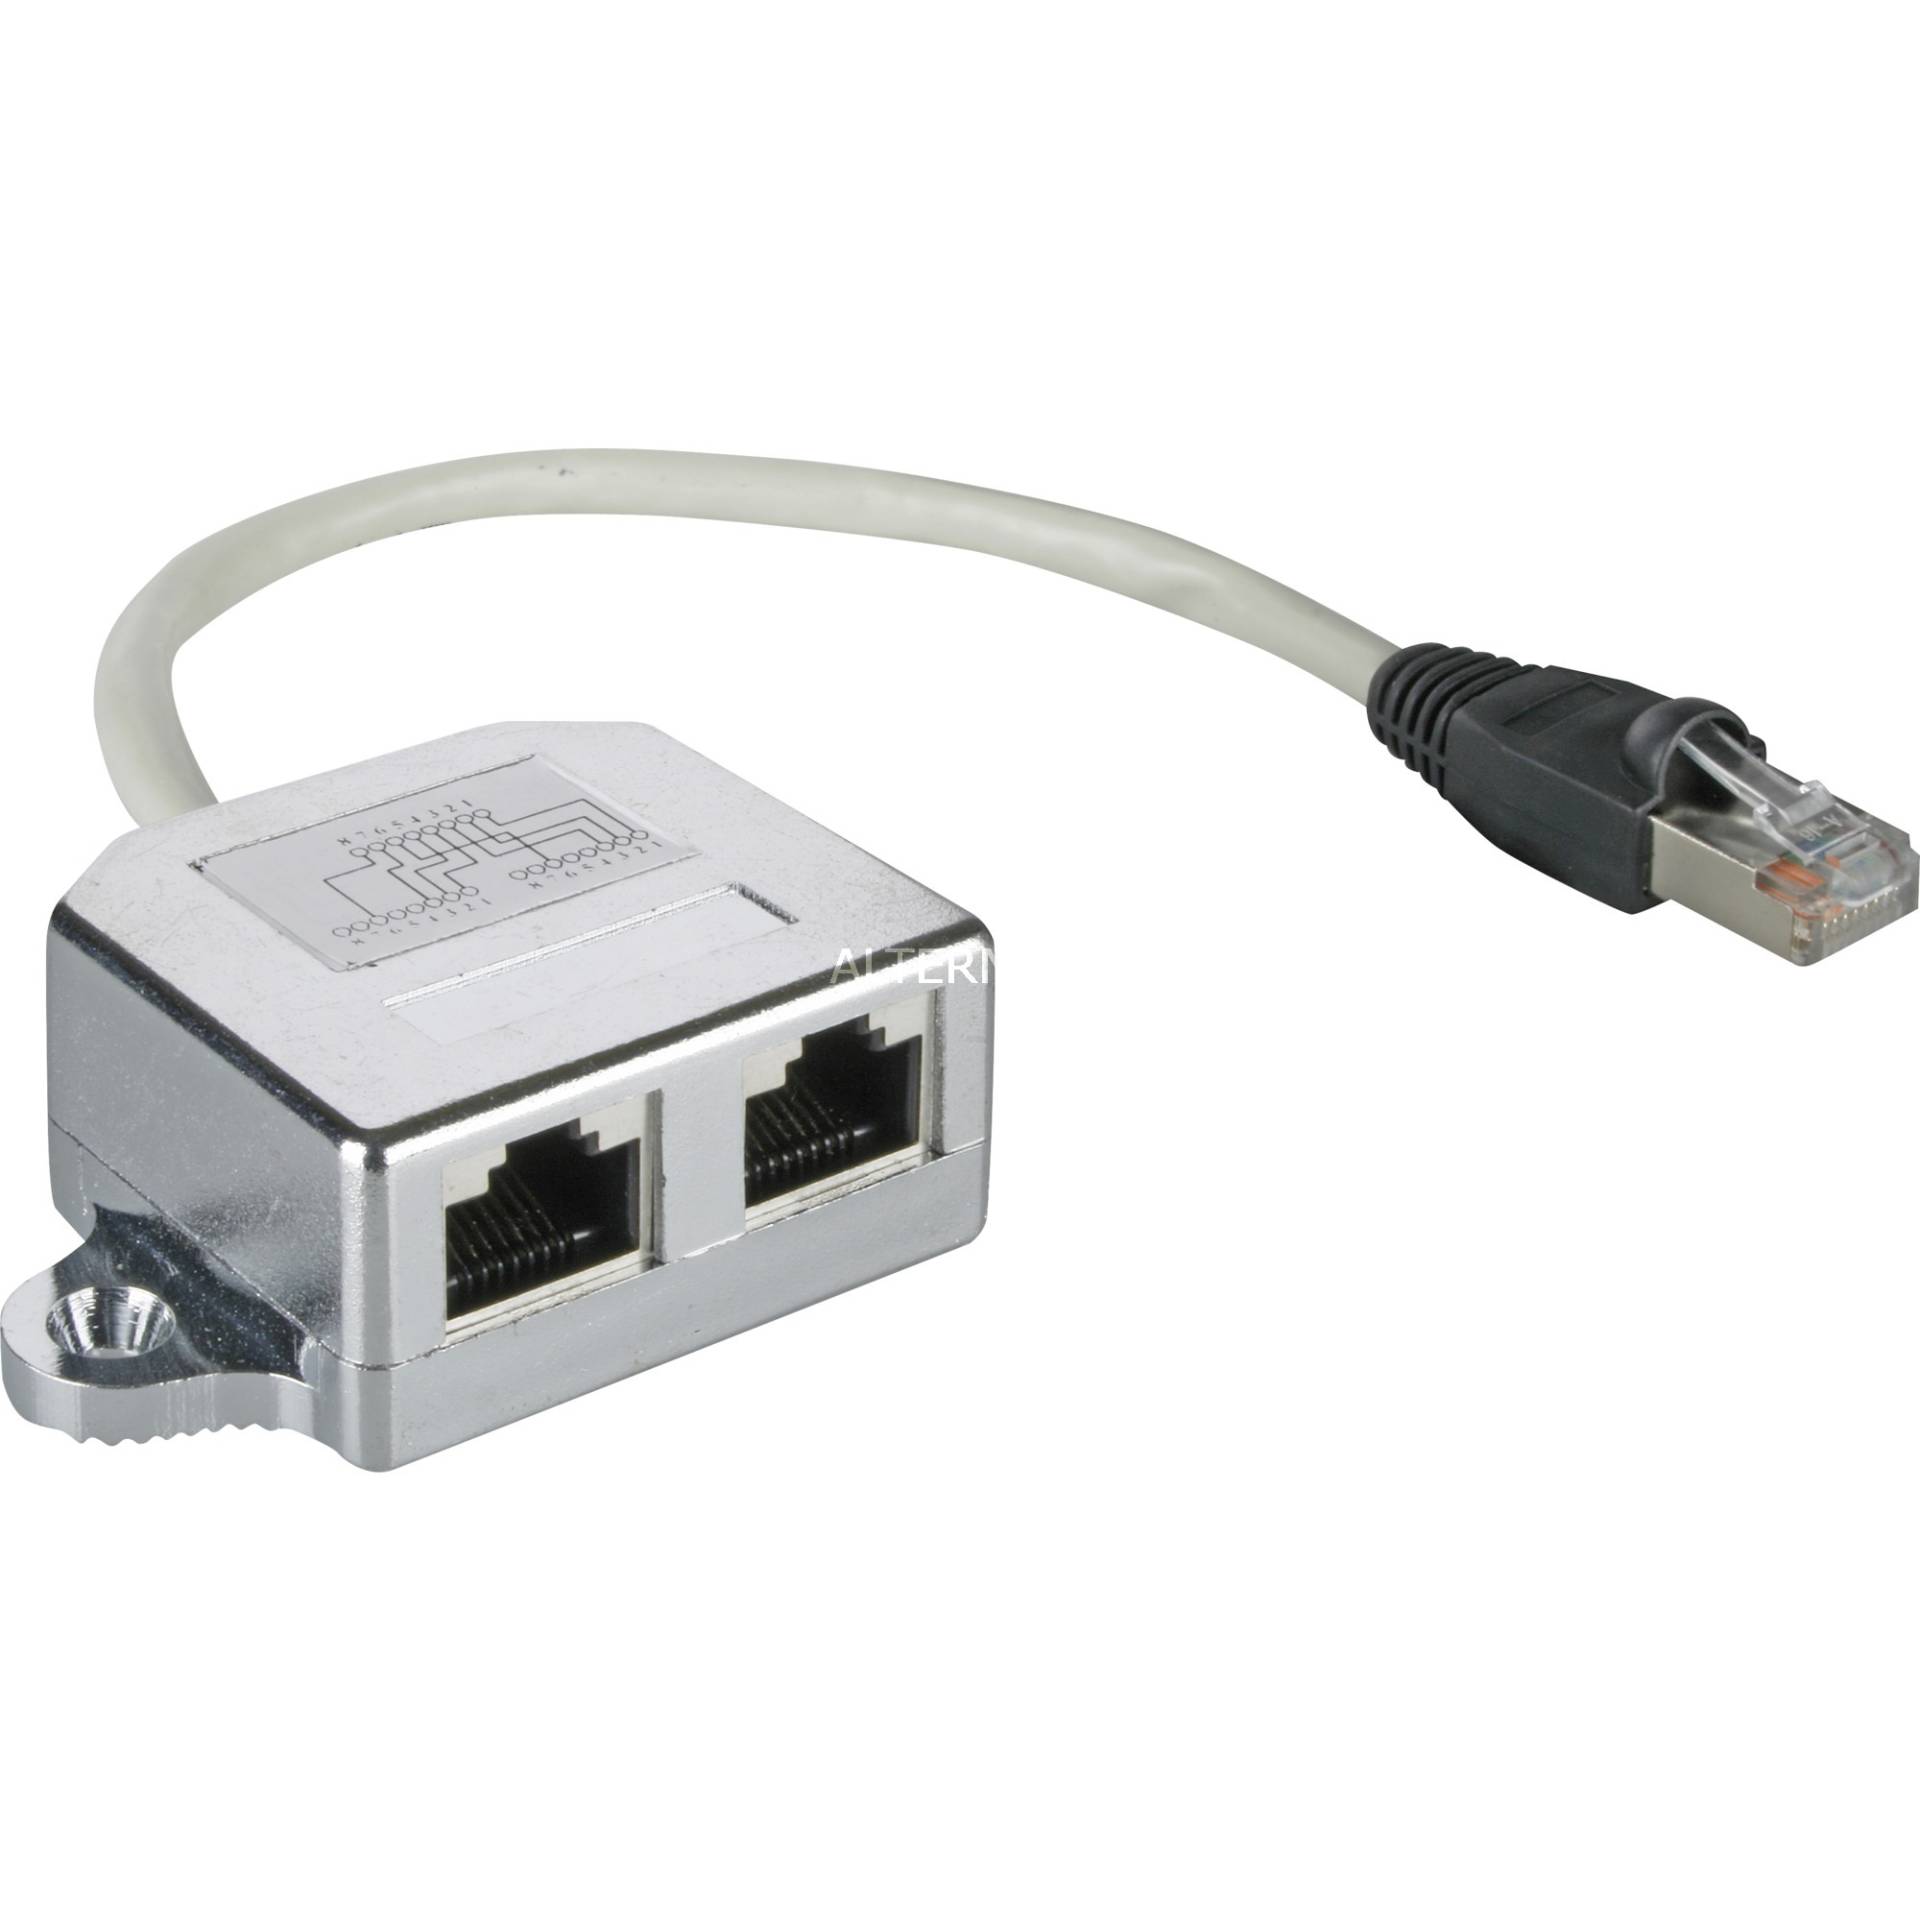 LAN-Kabel-Verteiler (Netzwerkdoppler), Y-Adapter 68908 von Goobay